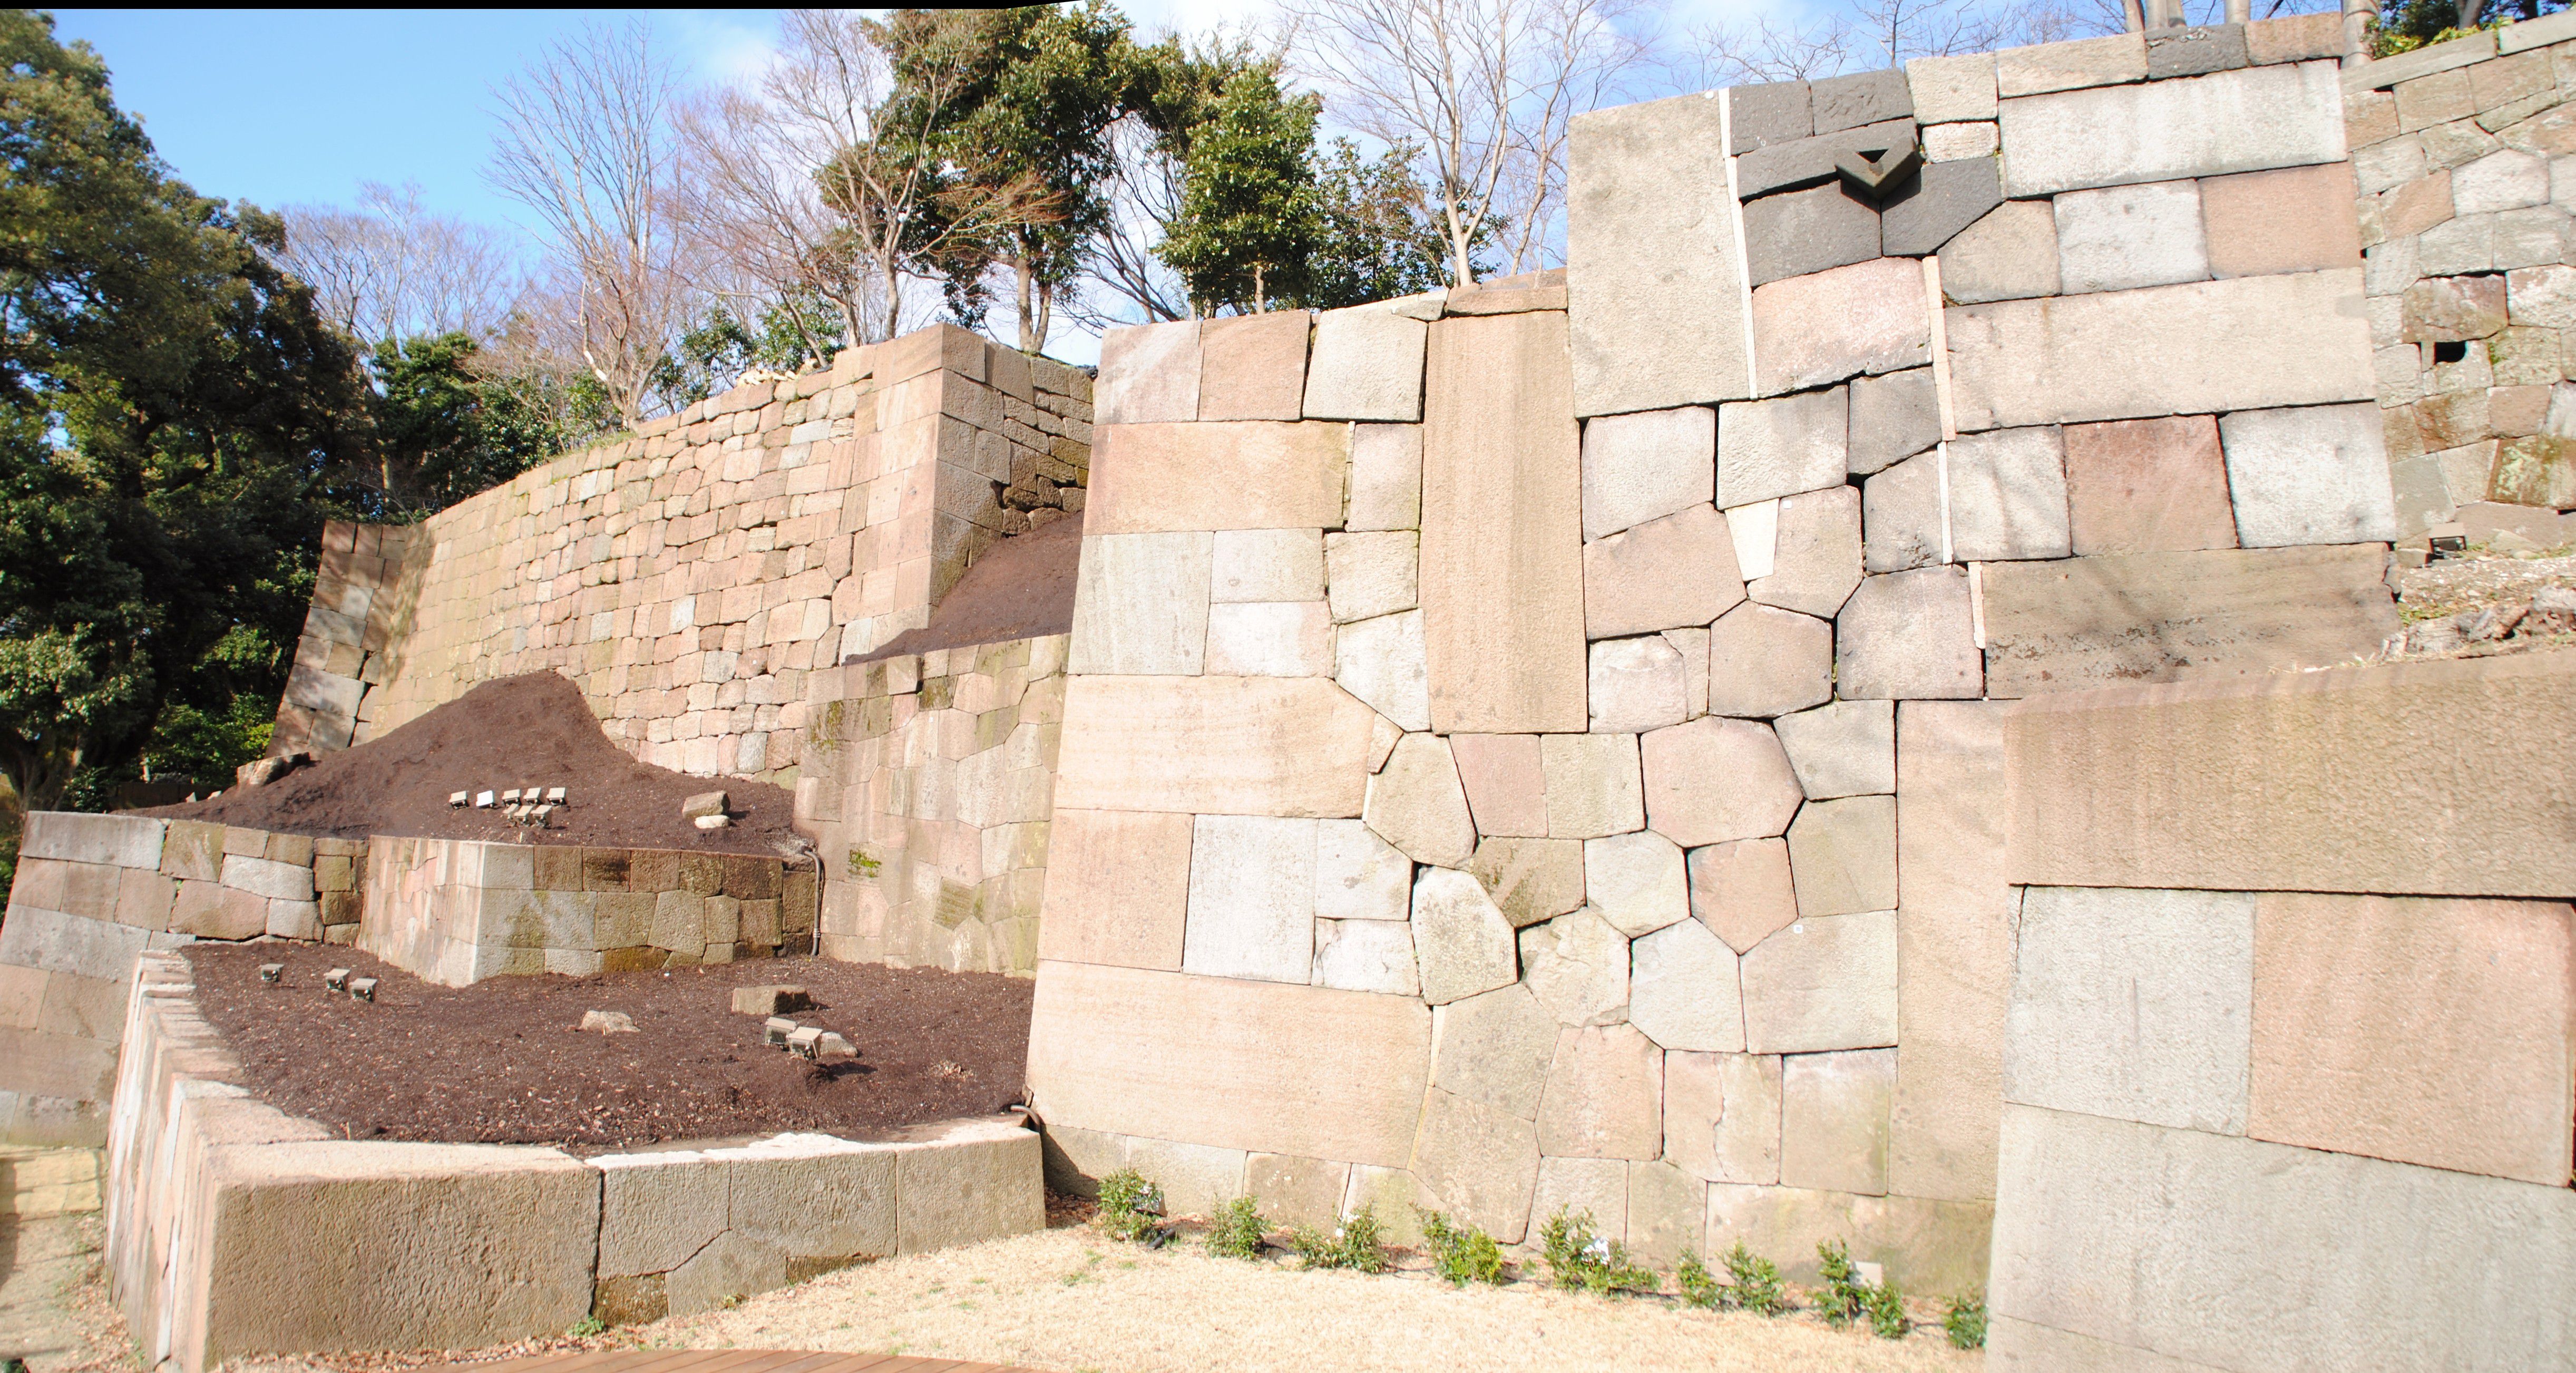 石川県金沢市の人気観光スポット丸庭園！加賀百万石の底力を目の当たりに！